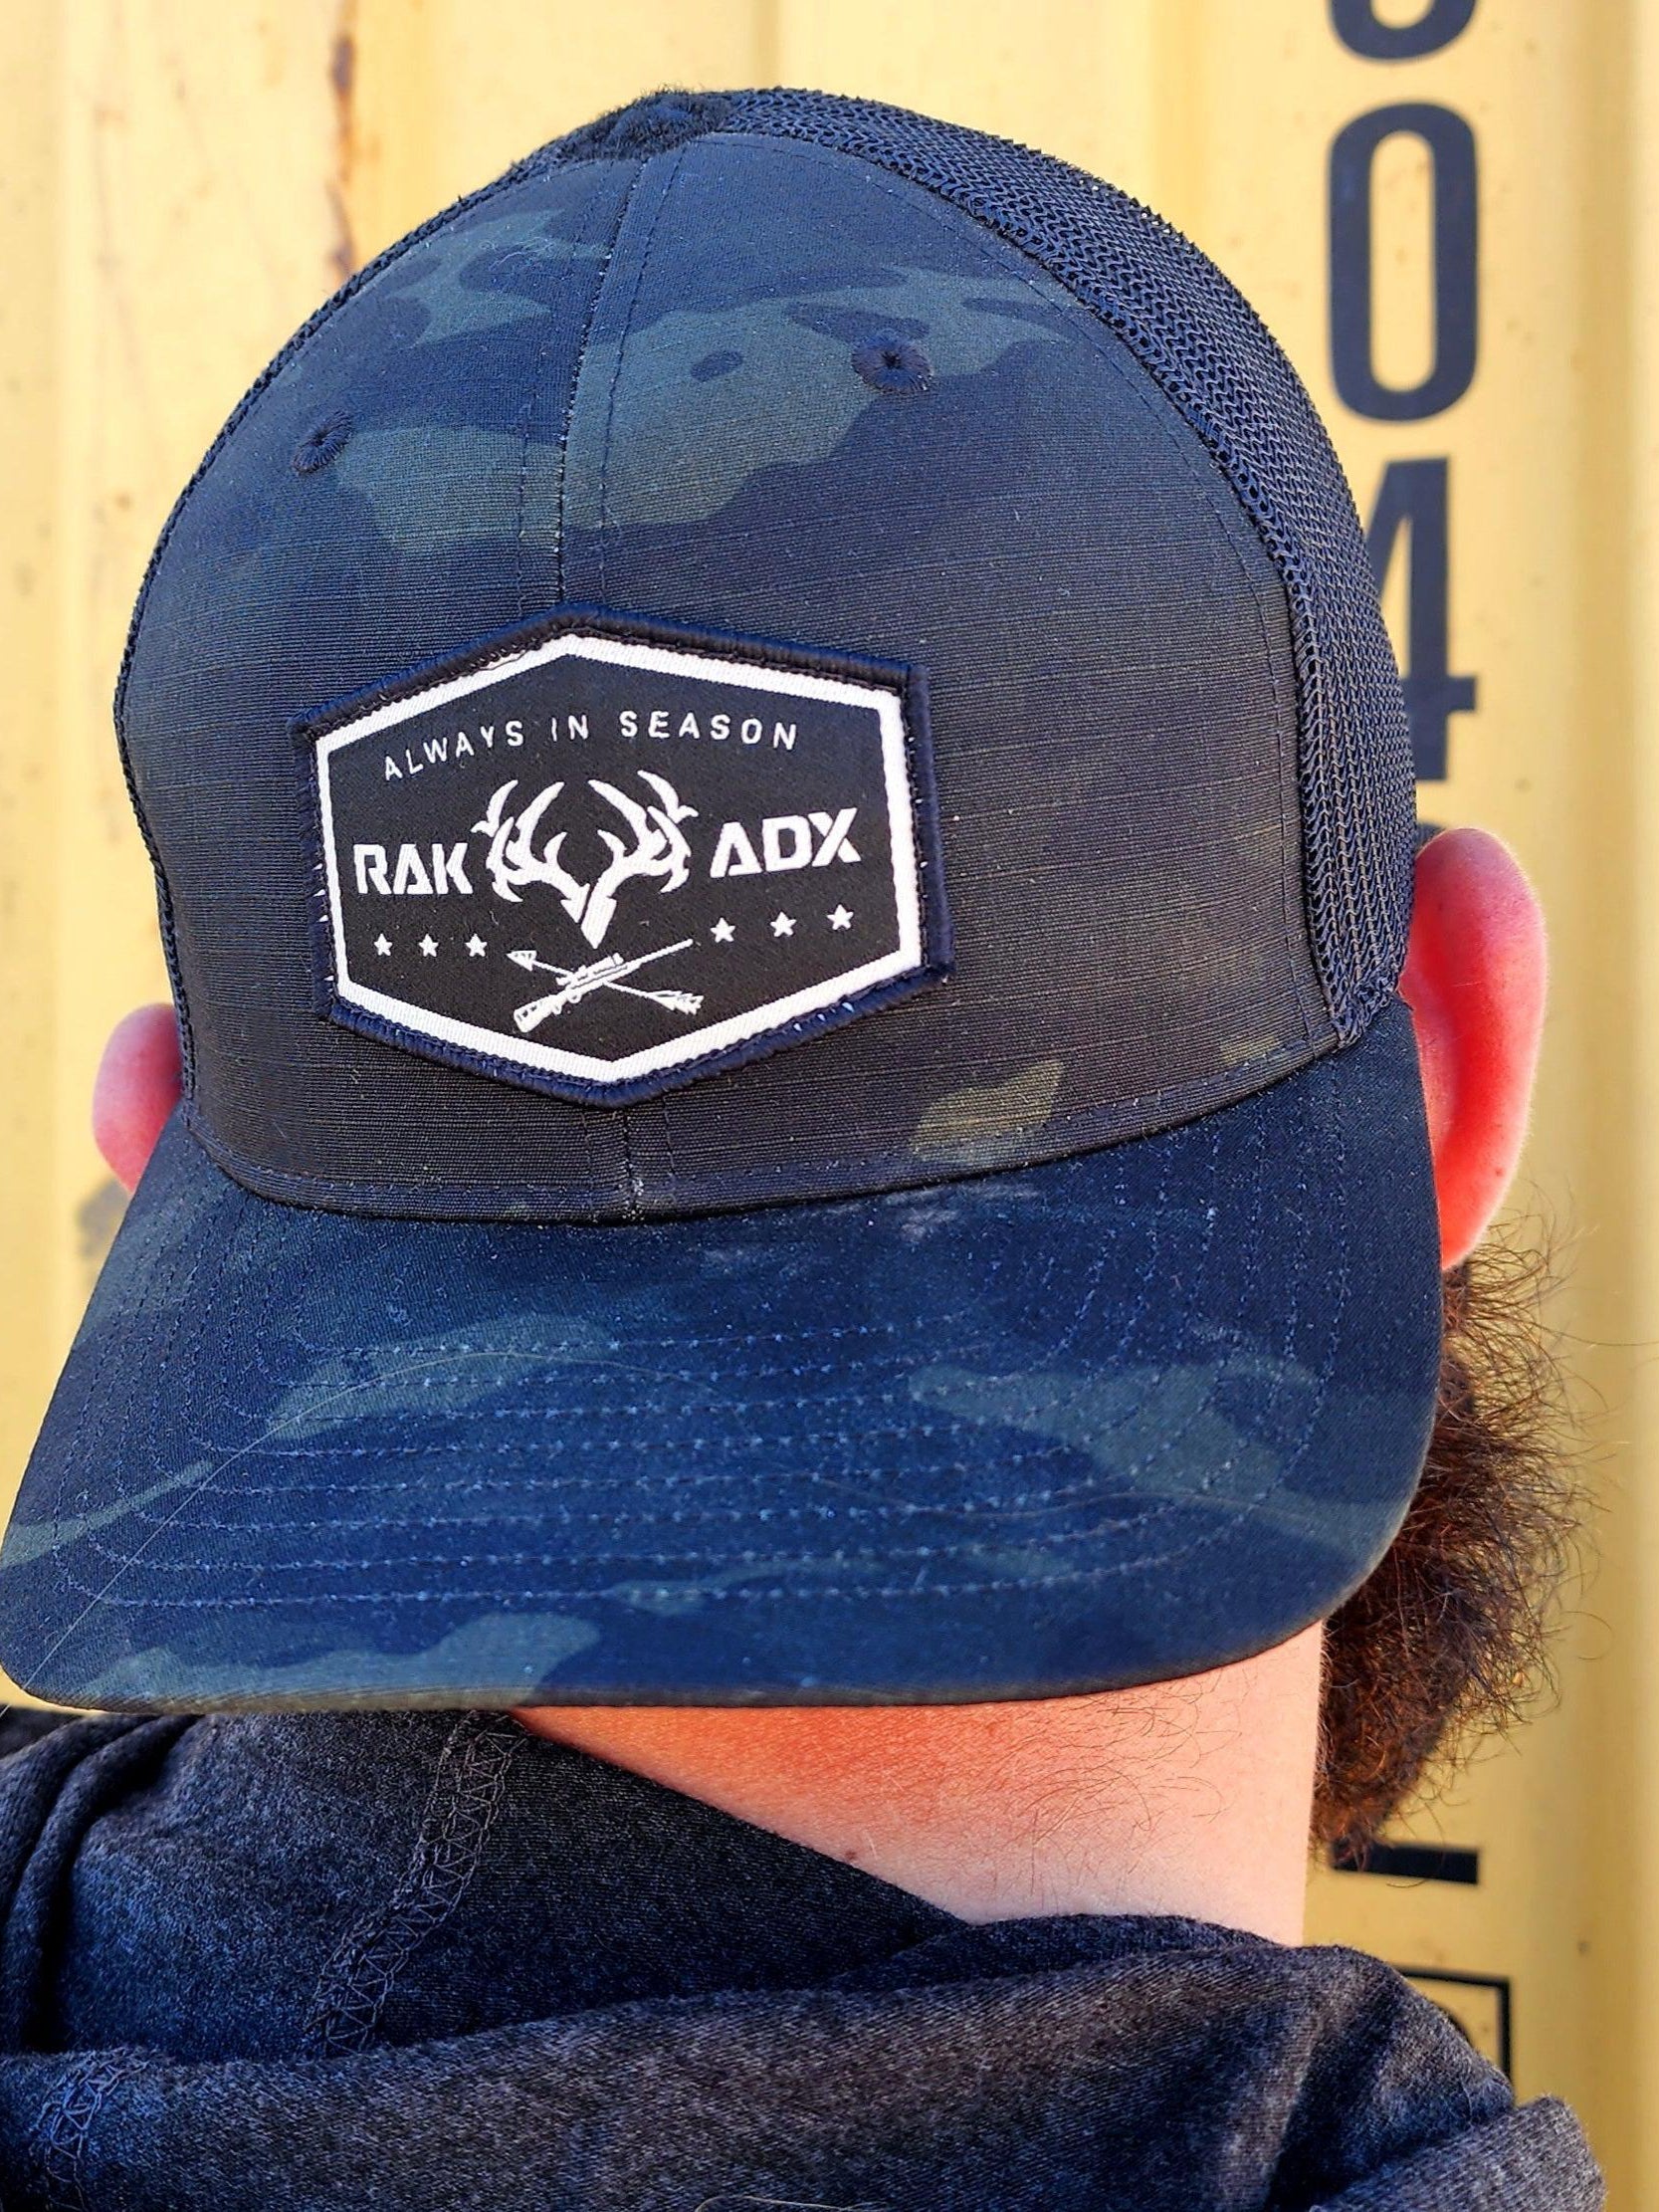 Dedicated Hunter Flex Hat | MultiCam Black at RakAdx